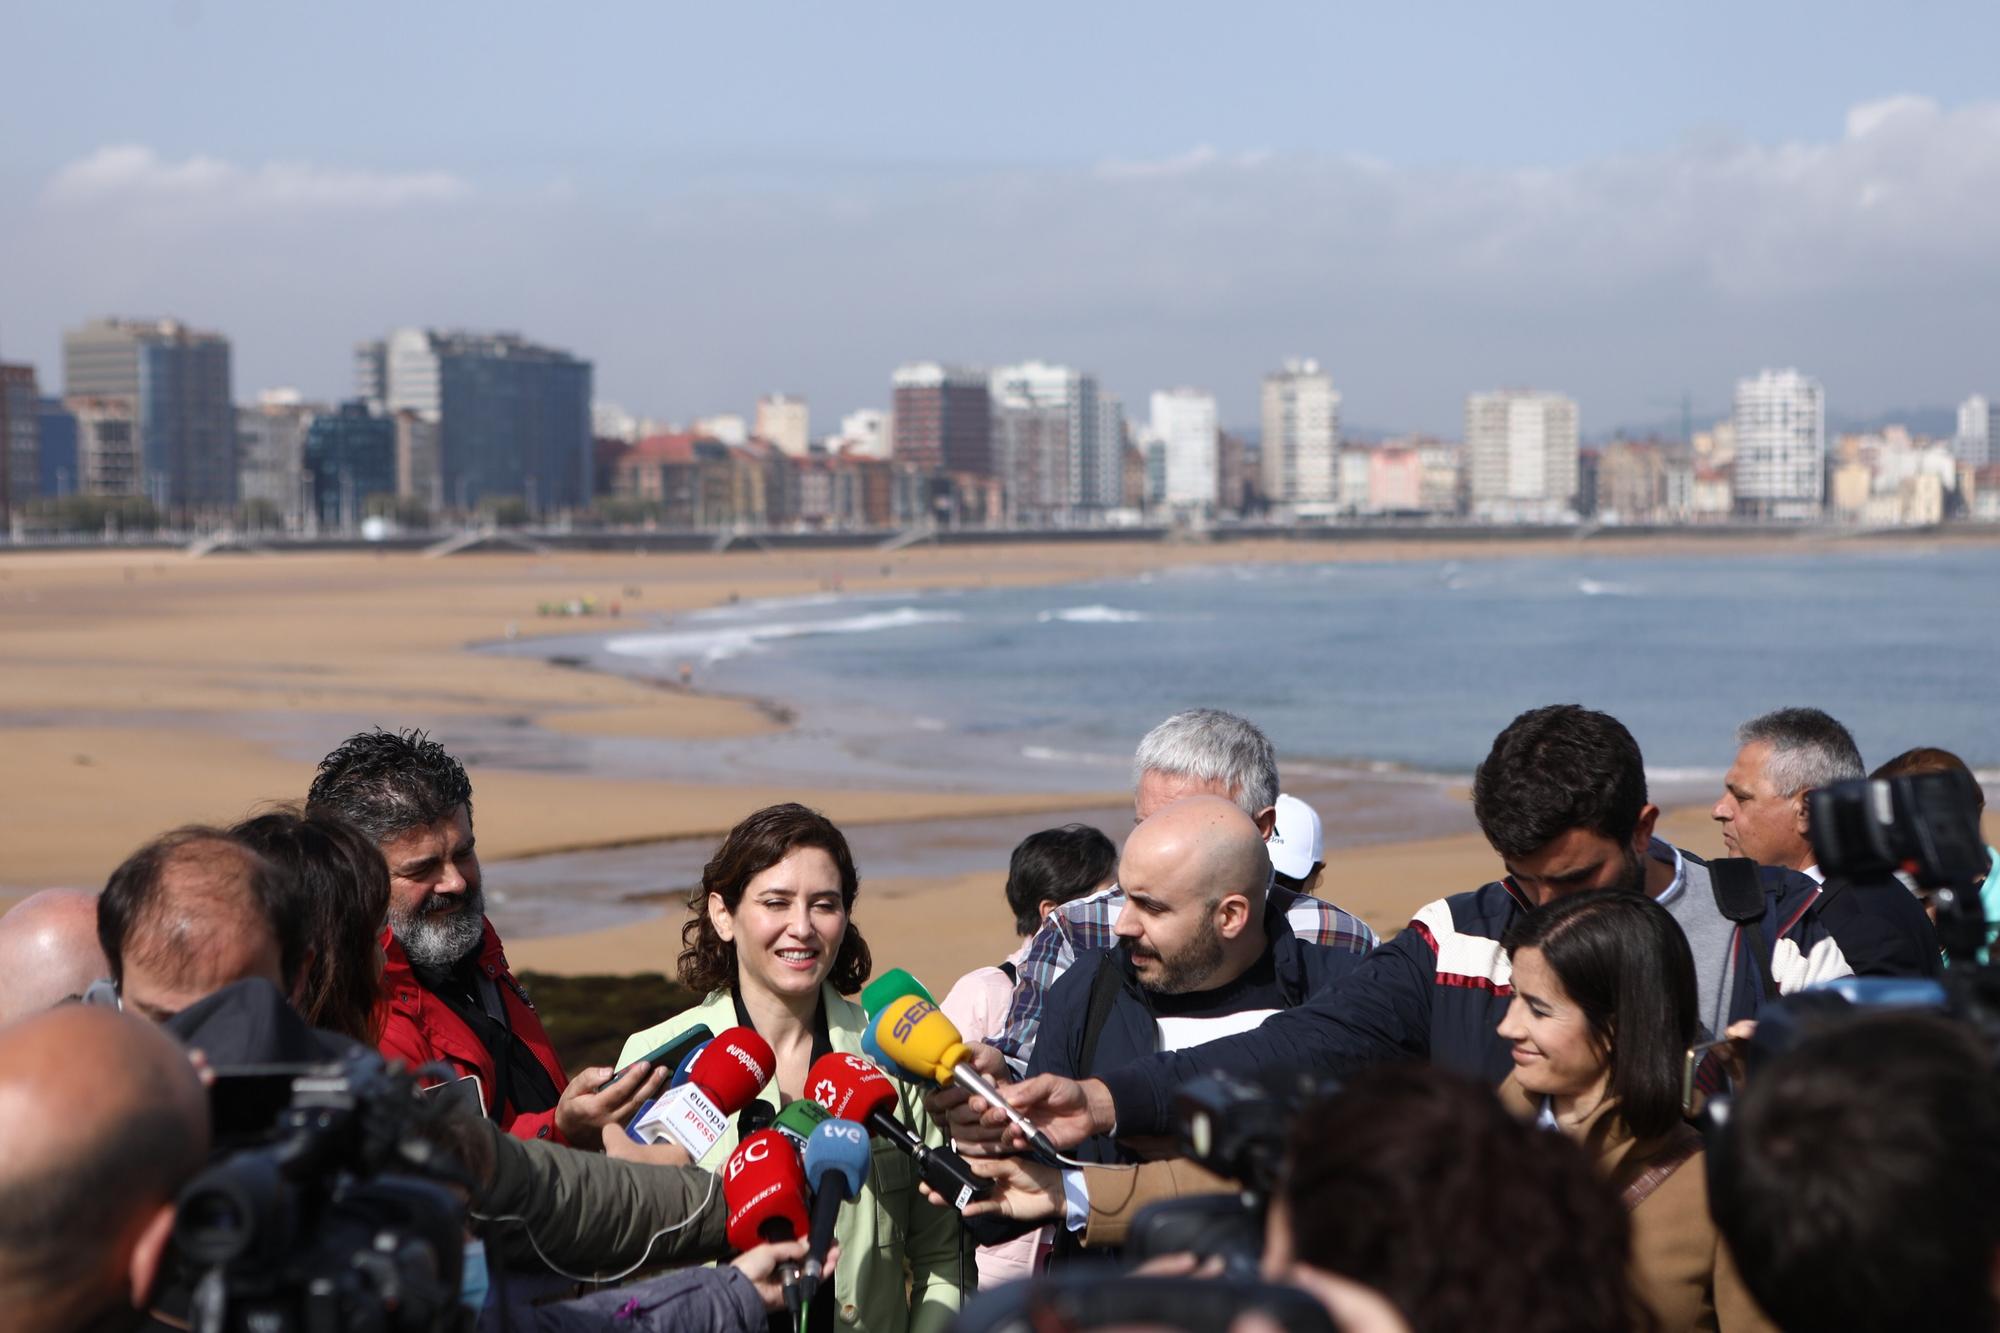 La visita de Isabel Díaz Ayuso a Gijón, en imágenes